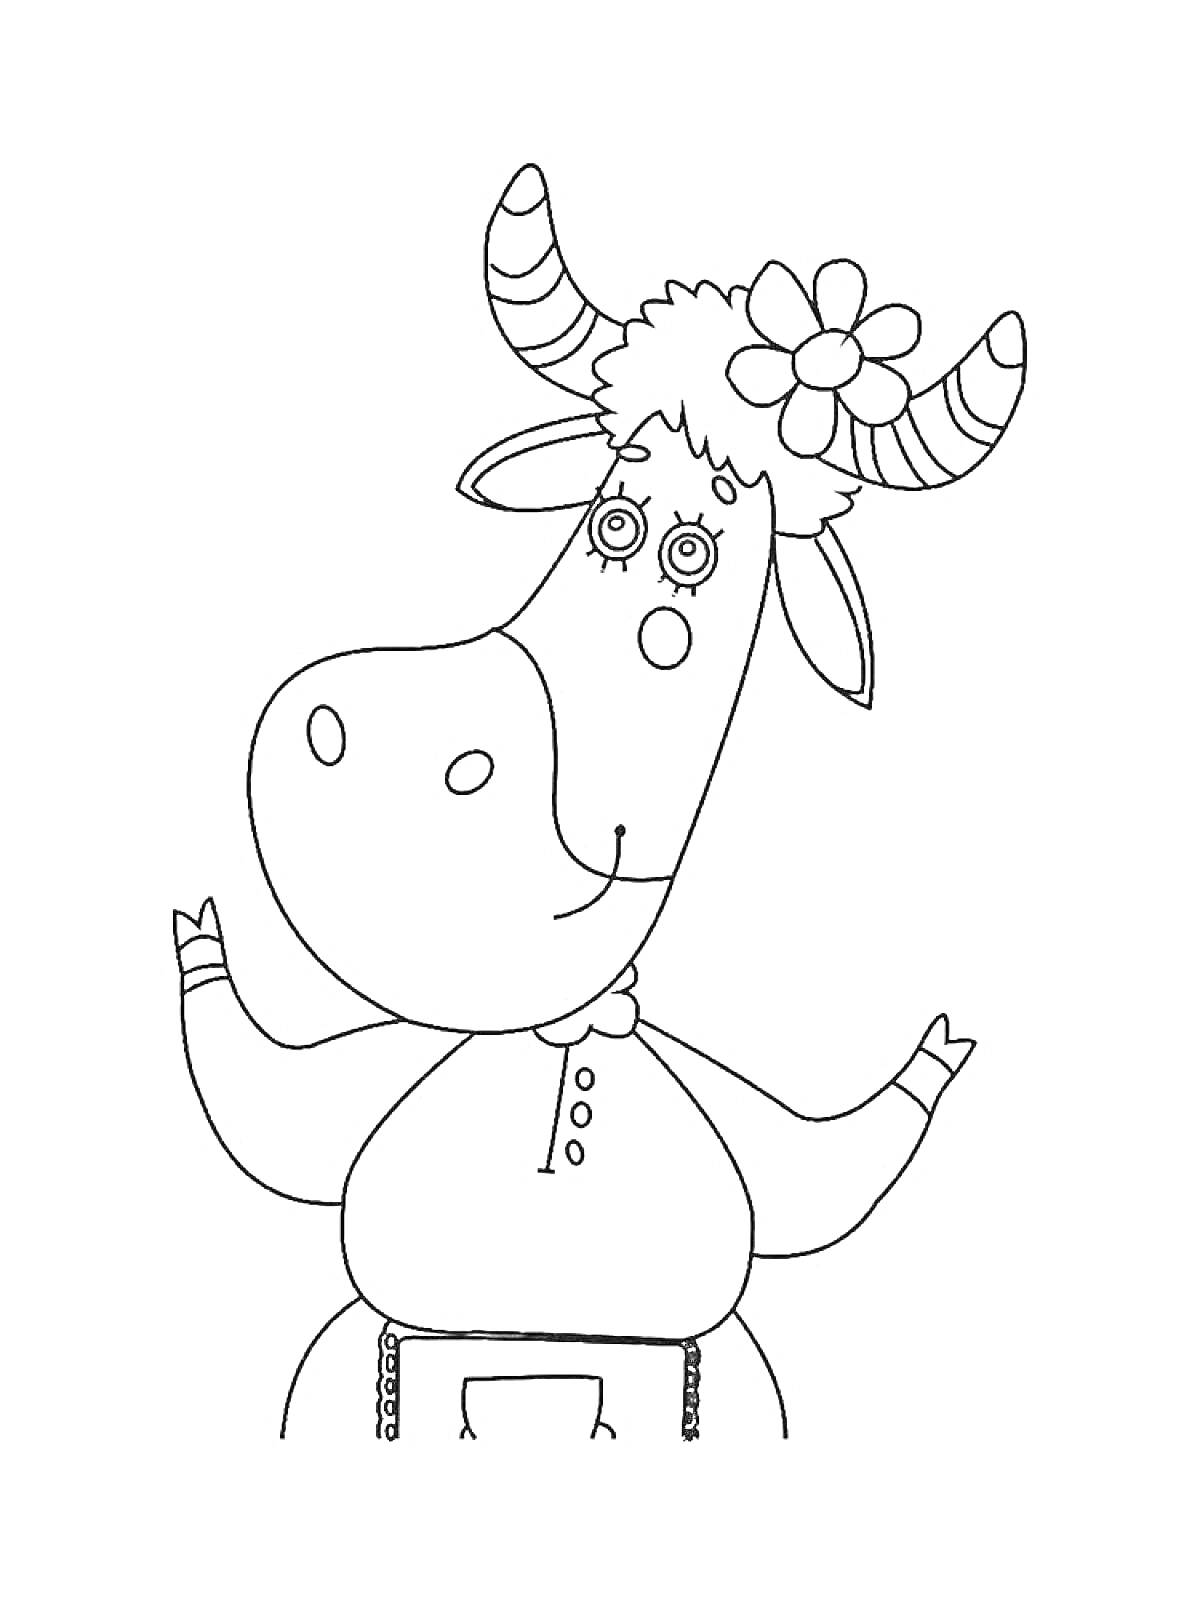 Раскраска Буренка Даша с цветком на голове и поднятыми руками